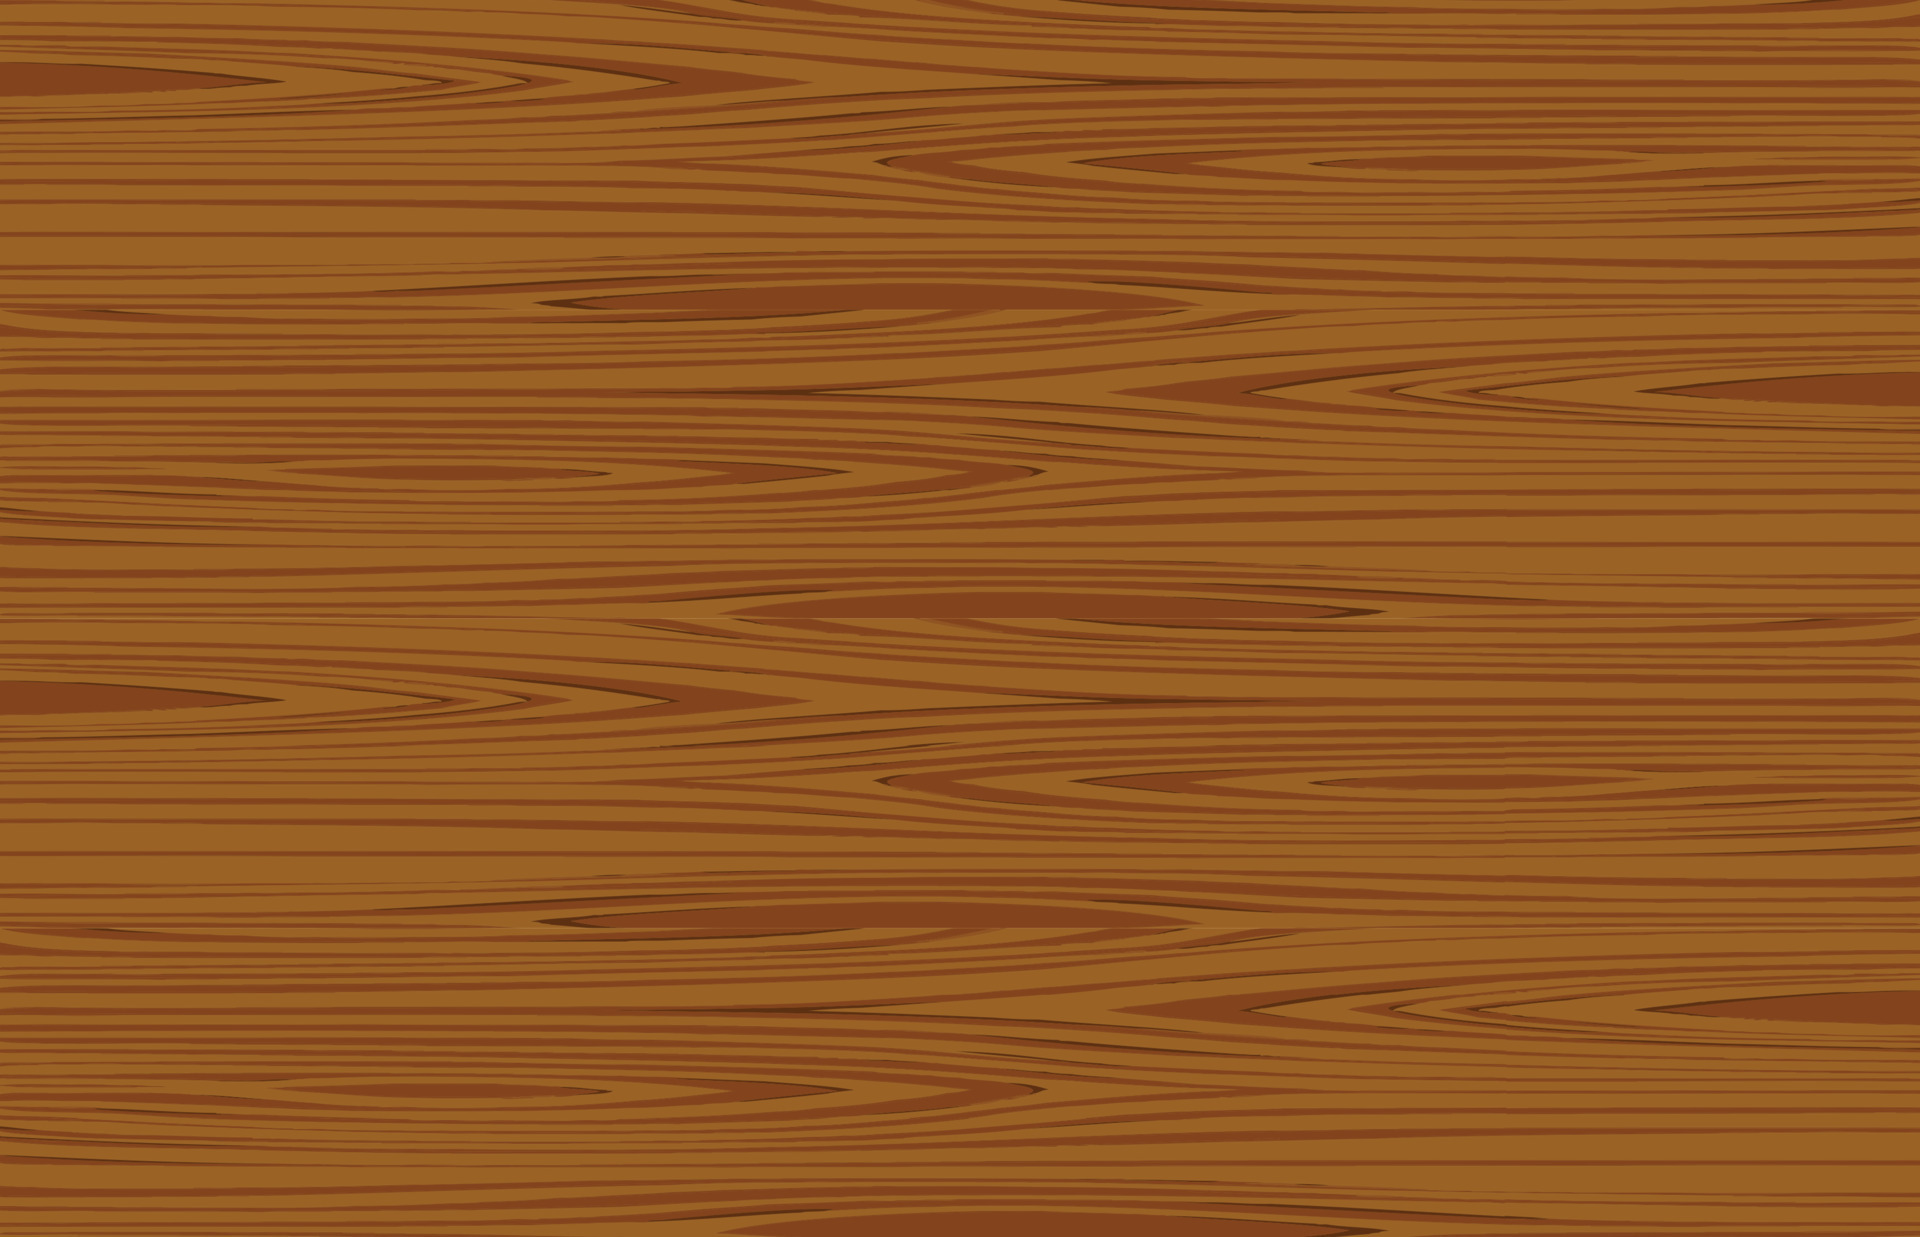 Bạn muốn tìm kiếm một hình nền gỗ hoạt hình đơn giản nhưng đầy tinh tế? Hãy cùng xem những hình ảnh gỗ vân gỗ này. Với những kết cấu rõ ràng và họa tiết đơn giản, bạn có thể thấy rằng đôi khi sự giản dị cũng chính là sự tuyệt vời.